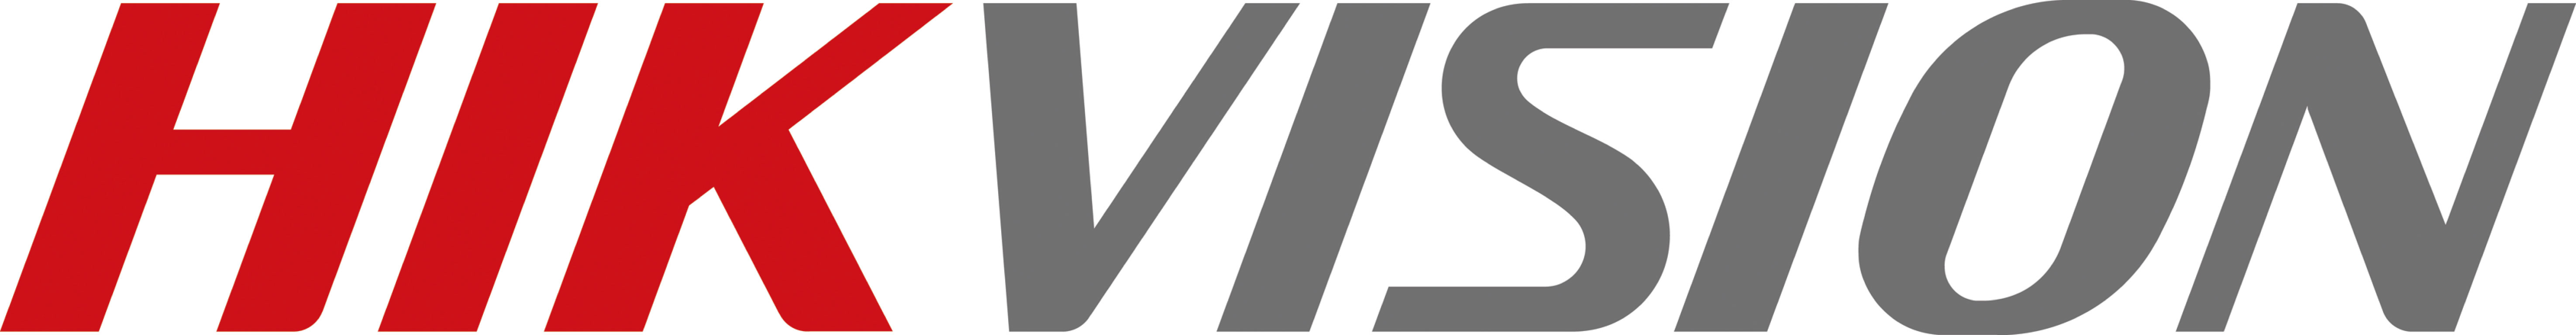 Hikvision Logo .jpg